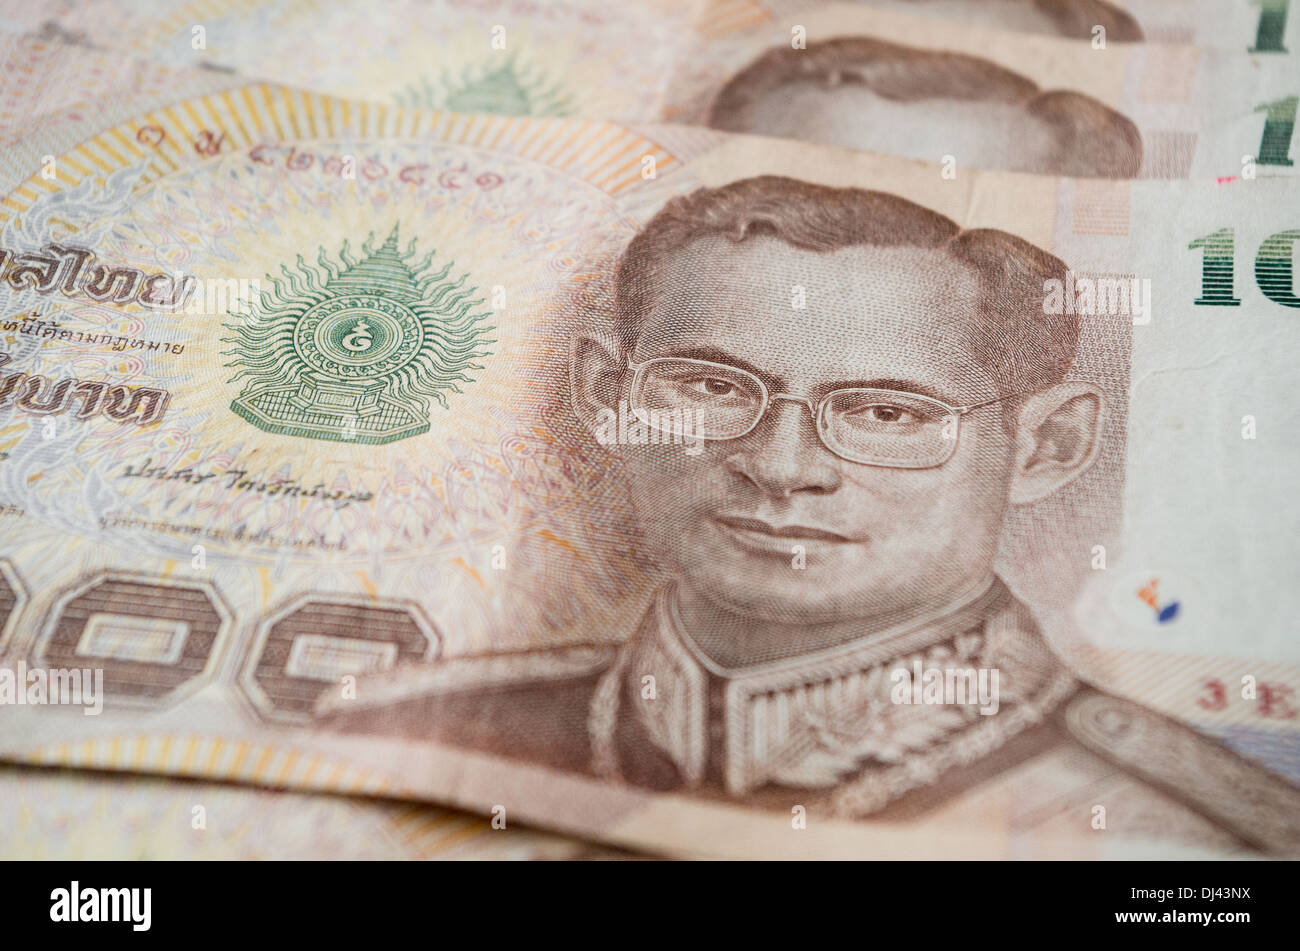 Cerca de Tailandia, moneda baht tailandés con las imágenes del Rey de Tailandia. Denominación de 1000 bahts. Foto de stock